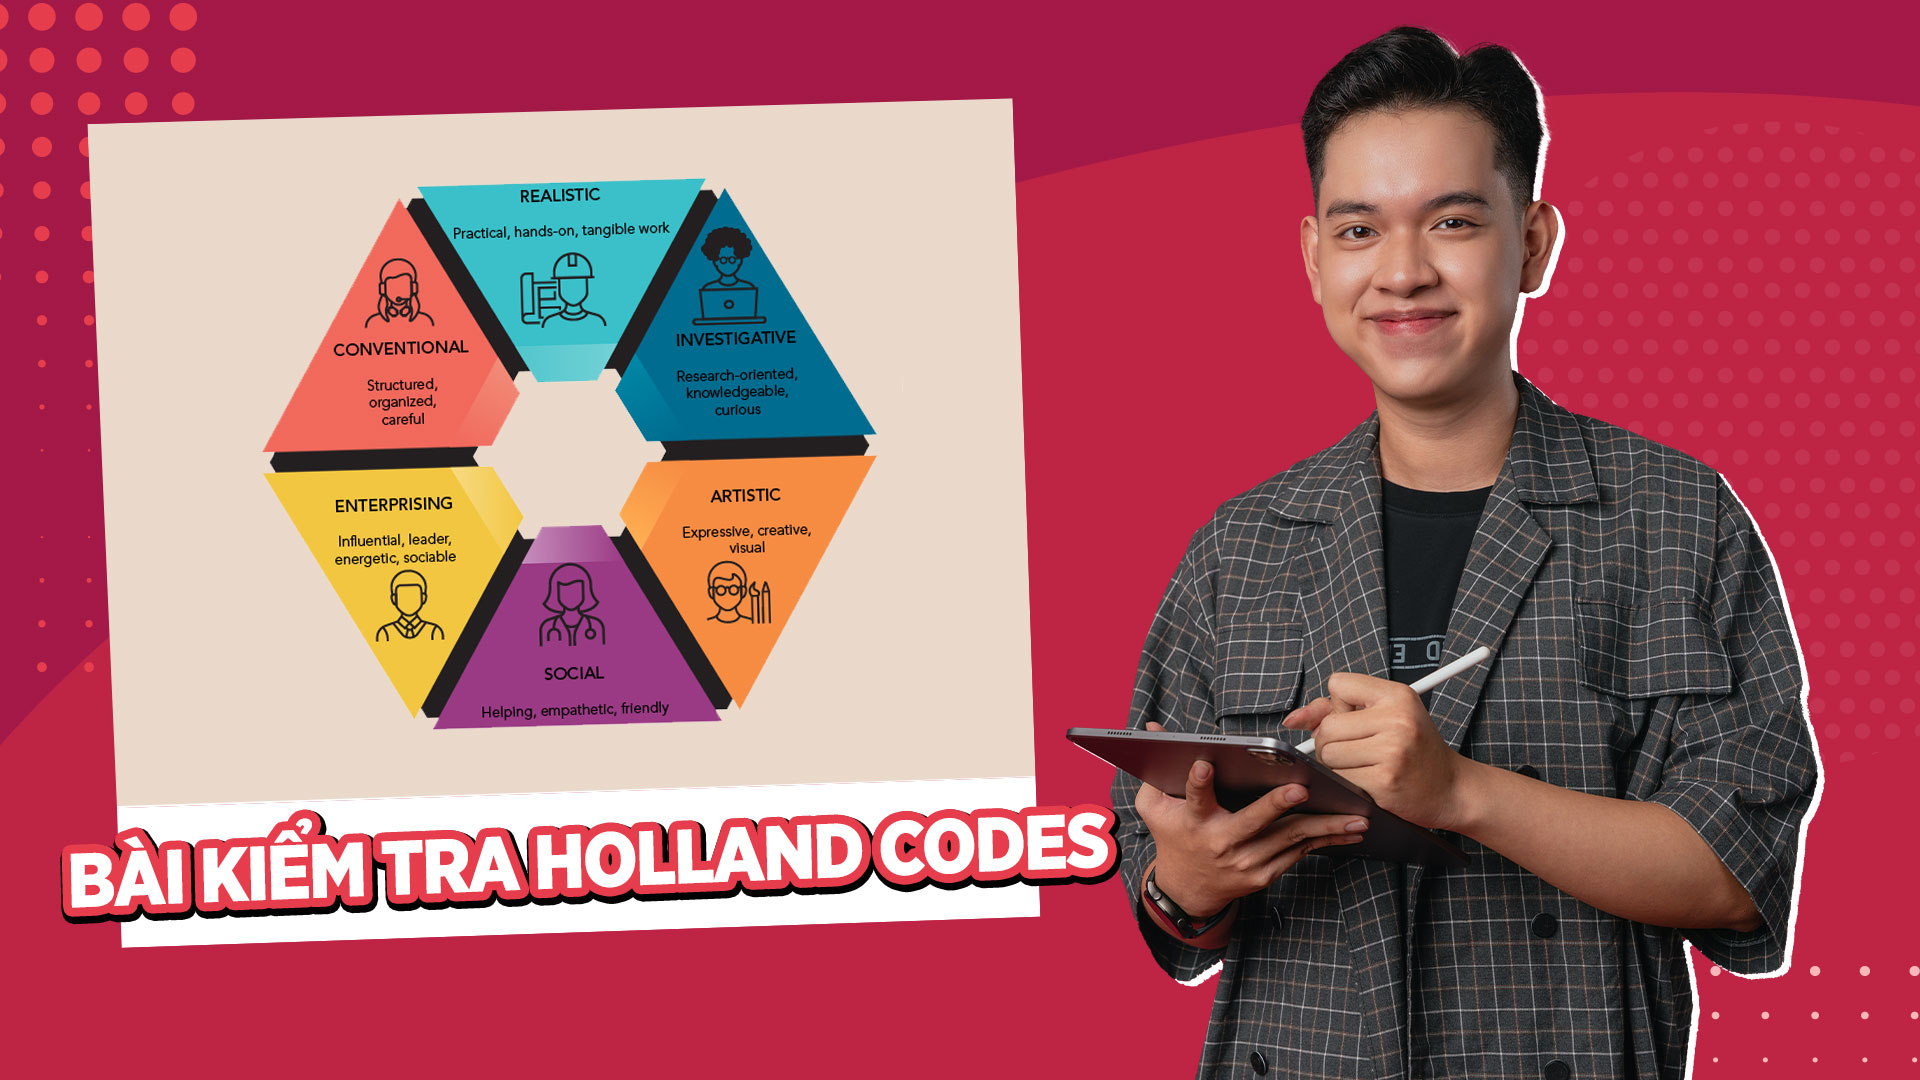 Holland Codes (Mã Holland) là một hệ thống phân loại sở thích và kỹ năng của từng cá nhân thành sáu nhóm tính cách nghề nghiệp